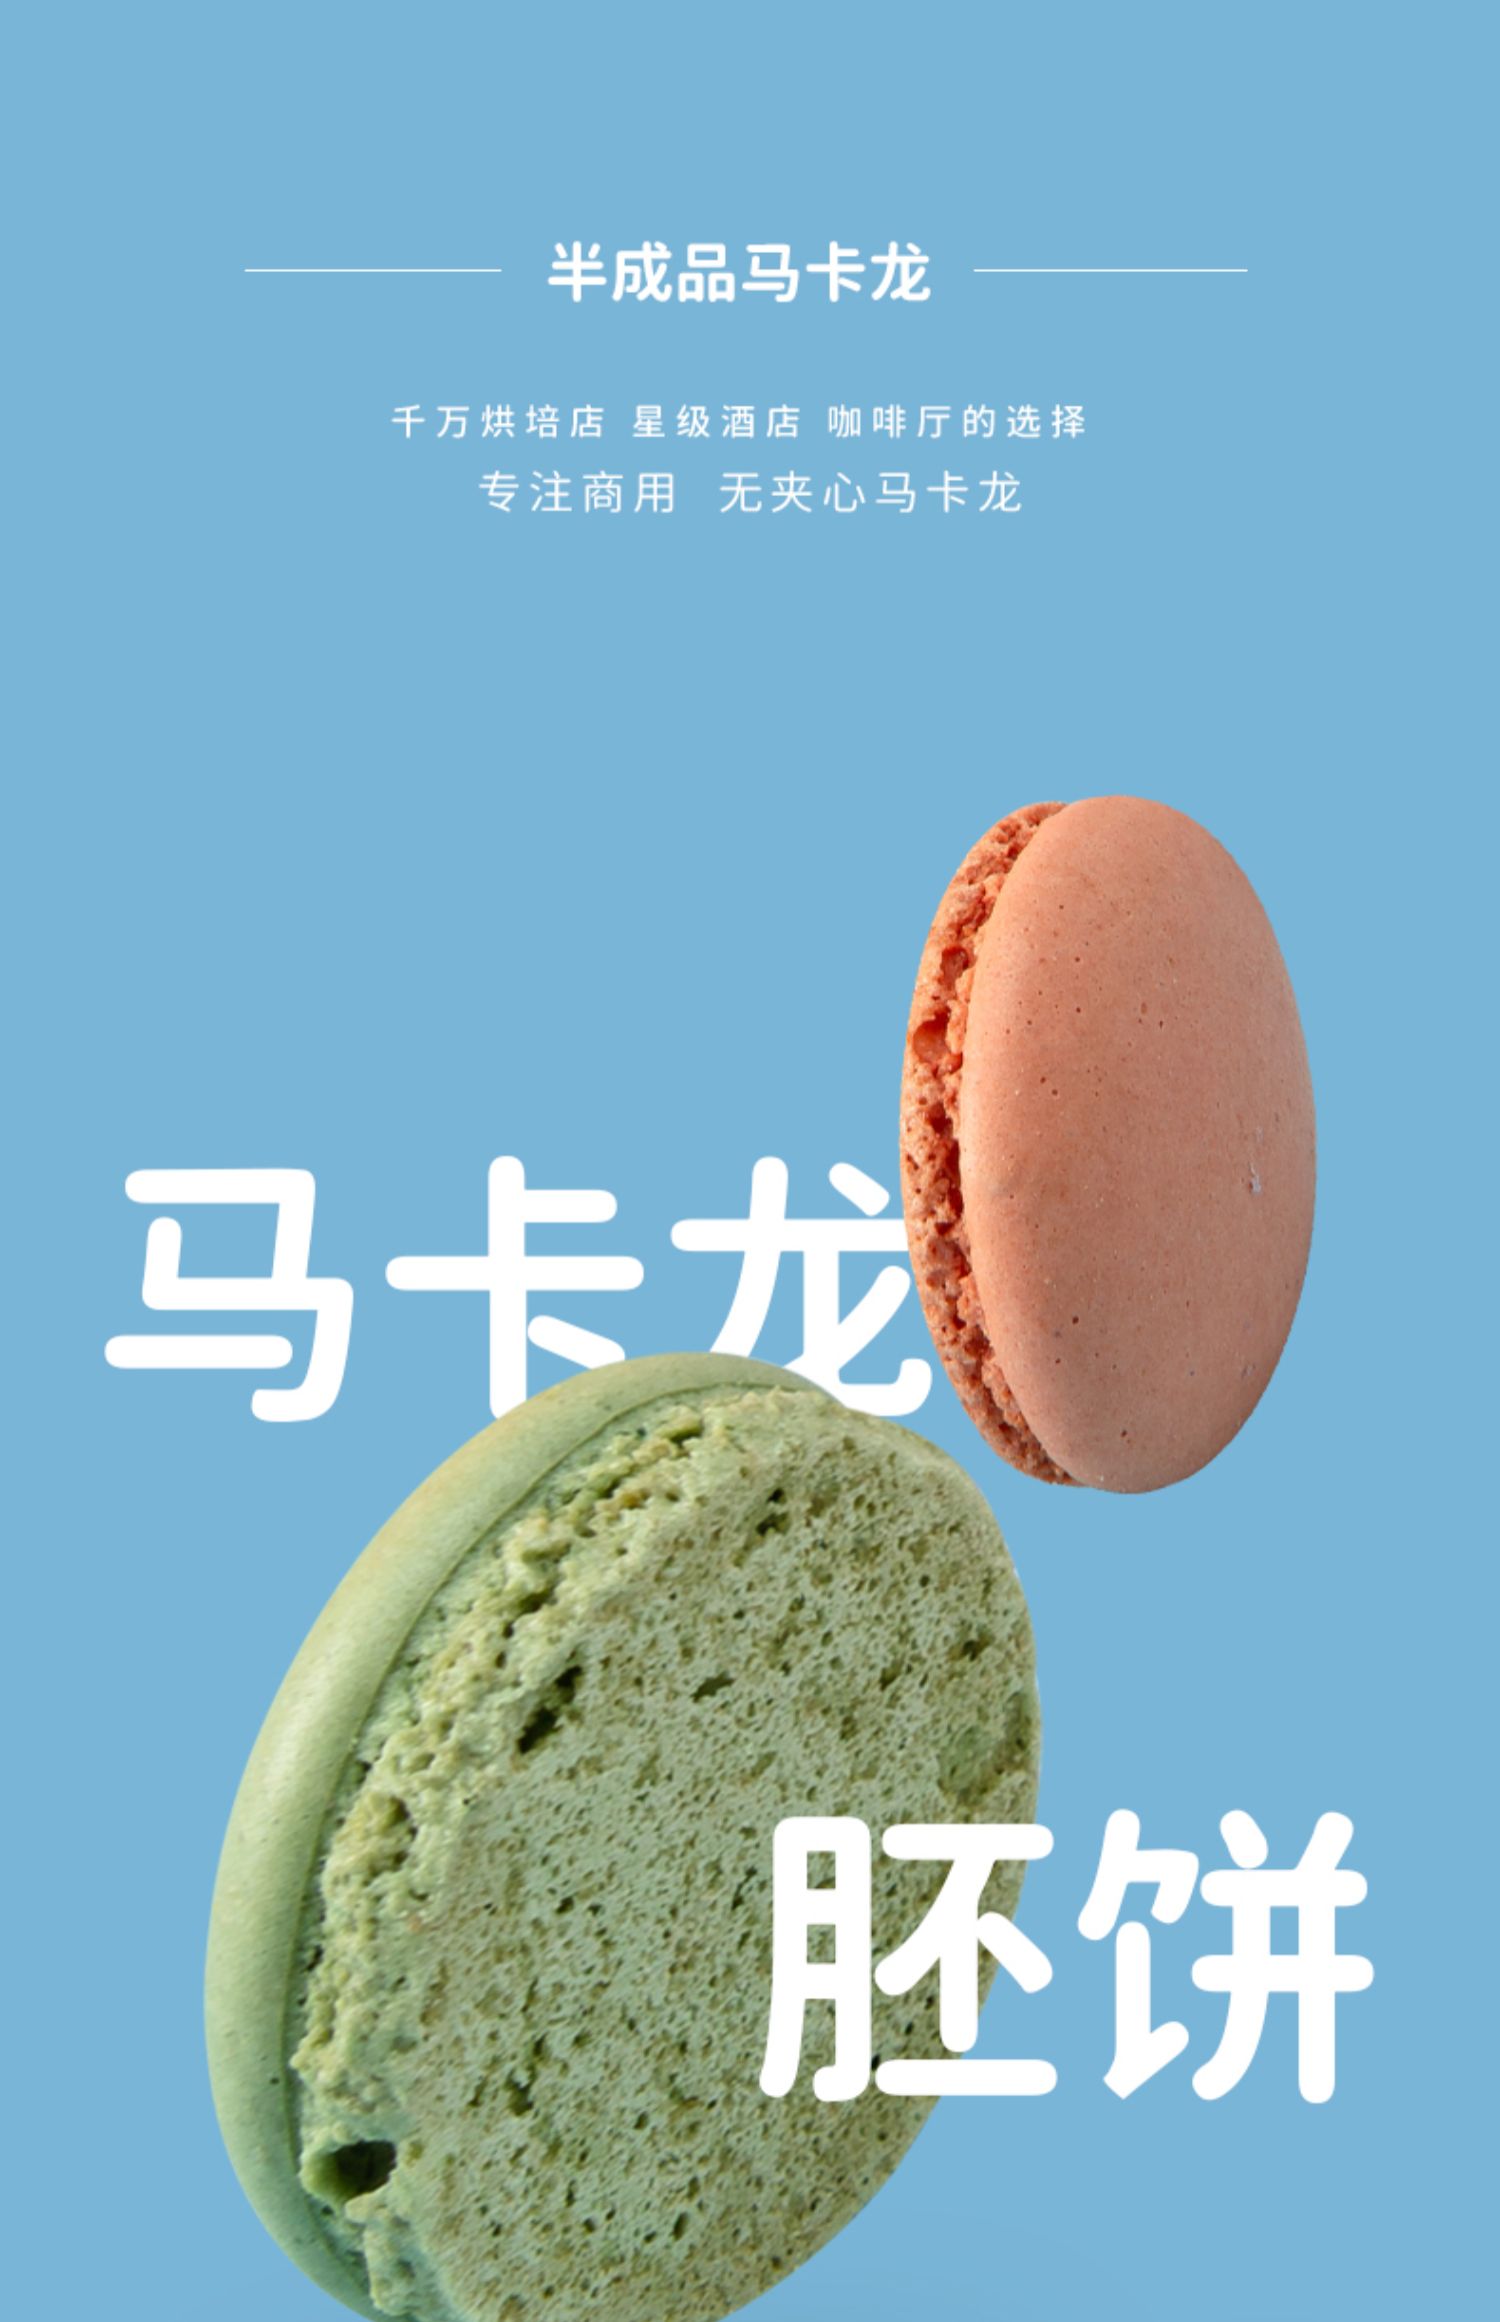 【恋忆莲】法式马卡龙甜点饼干礼盒装42粒